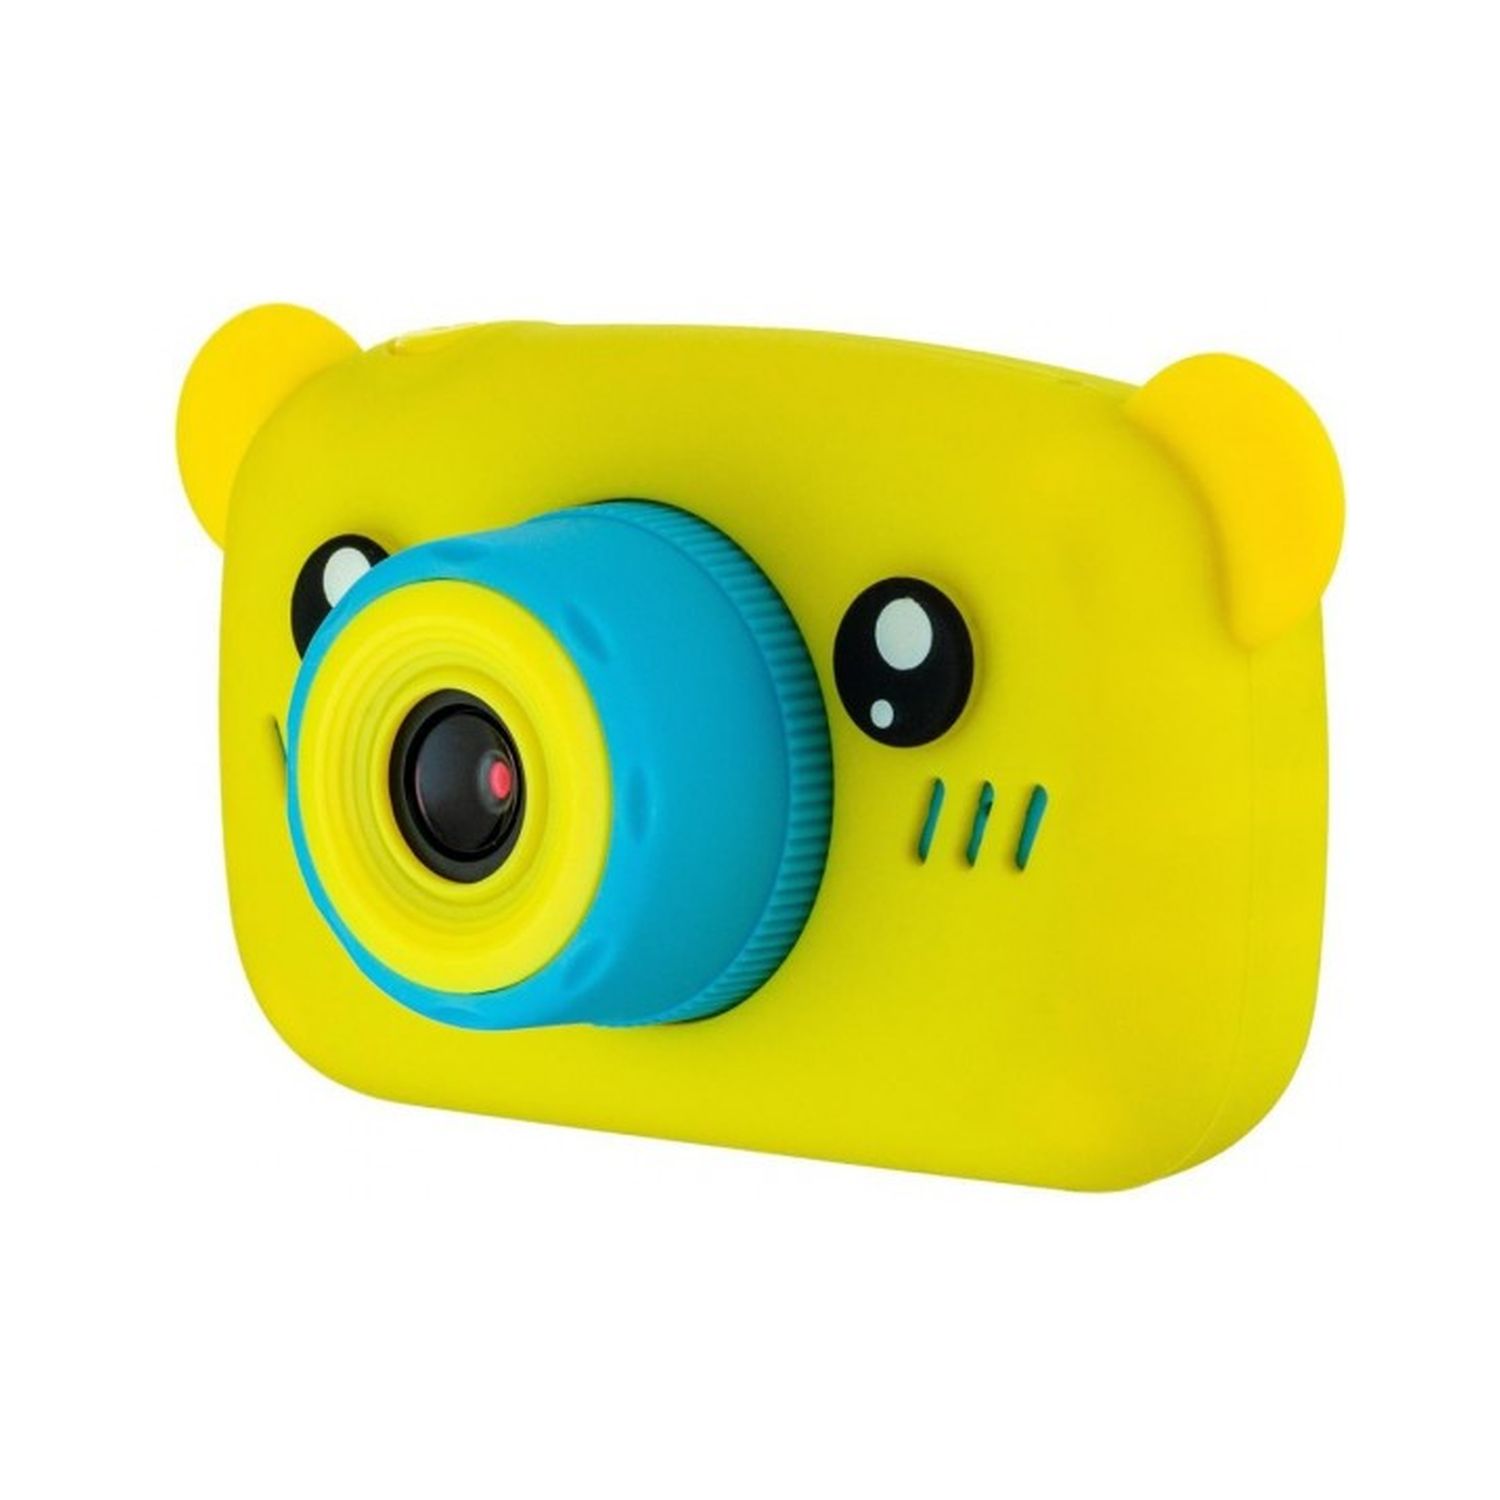 Детский цифровой фотоаппарат Uniglodis желтый мишка - фото 1